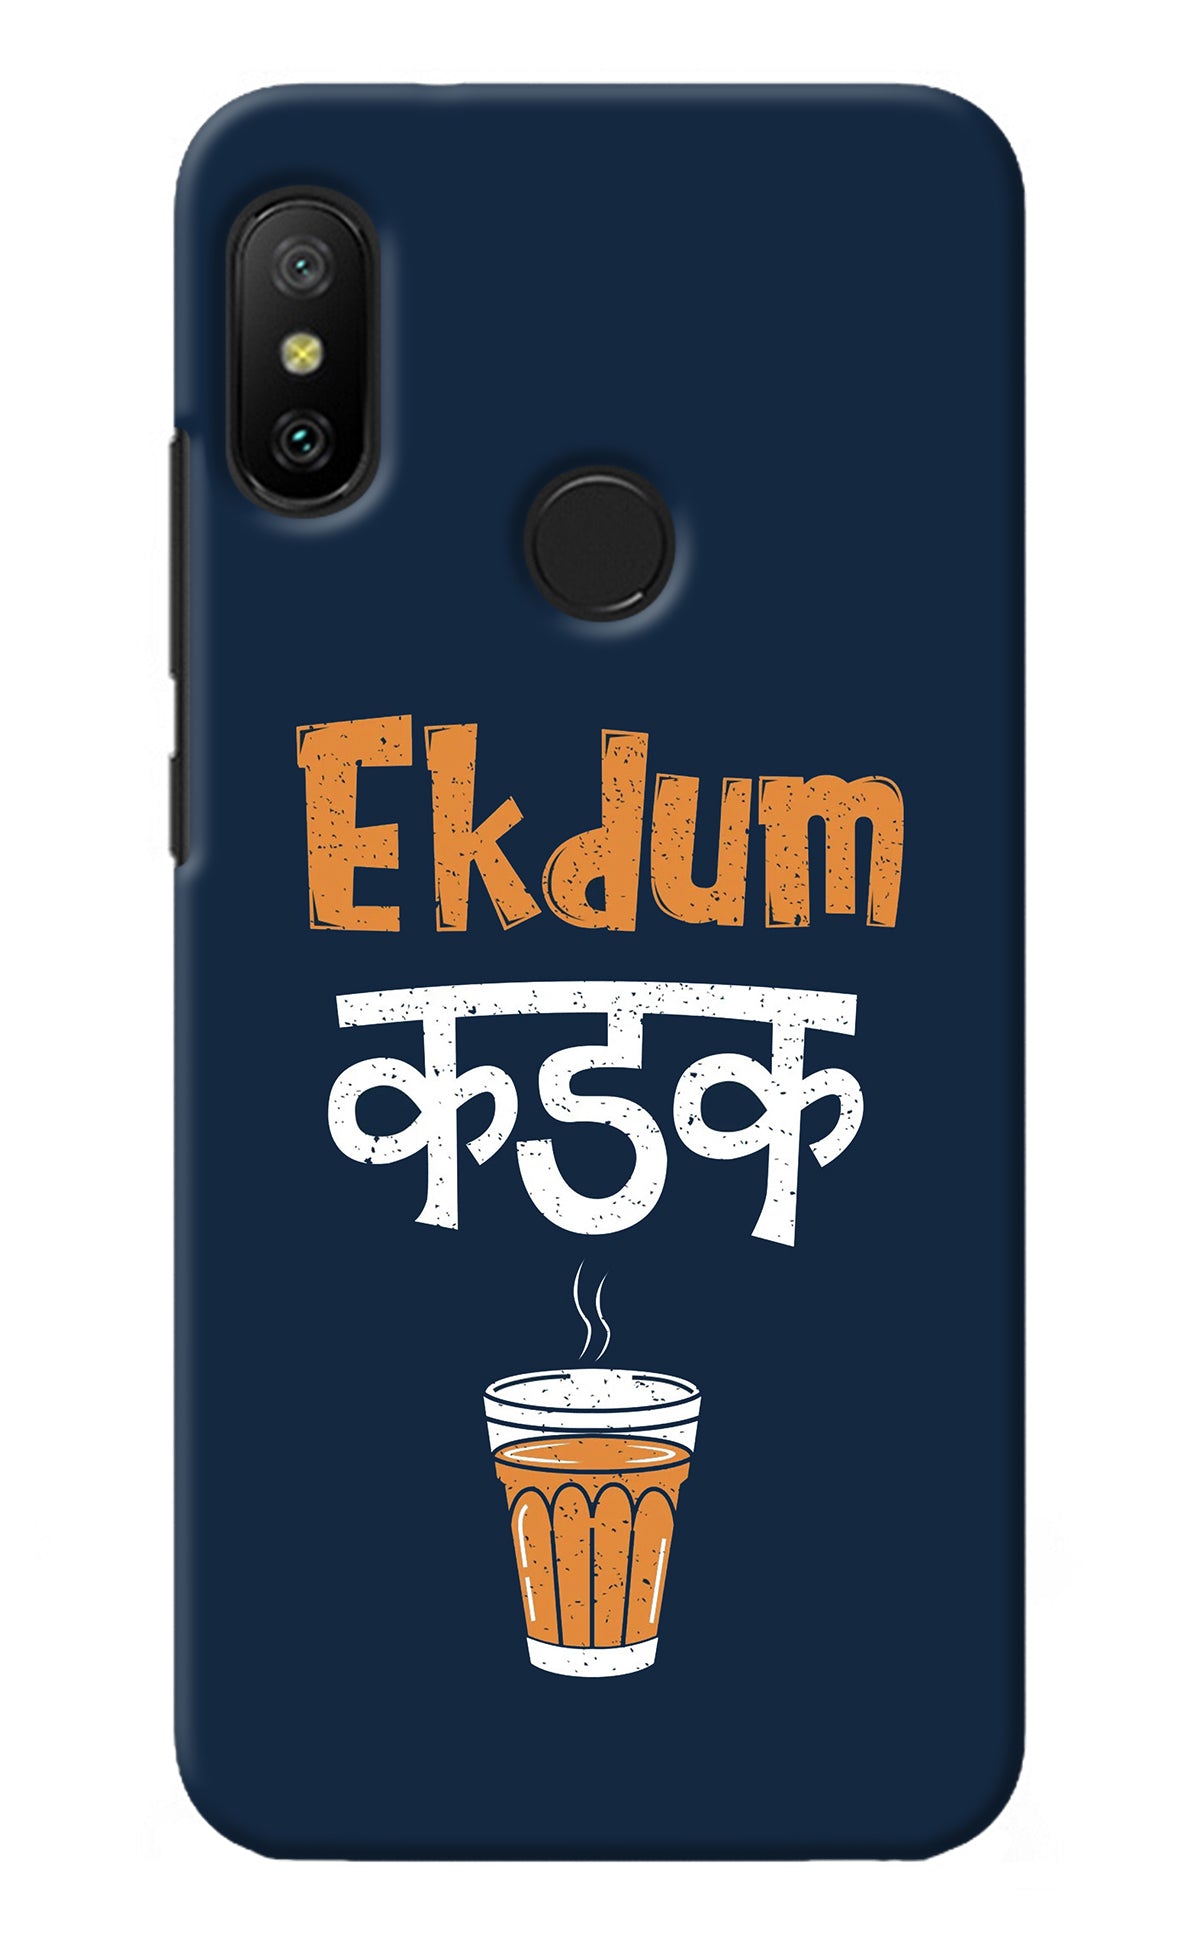 Ekdum Kadak Chai Redmi 6 Pro Back Cover